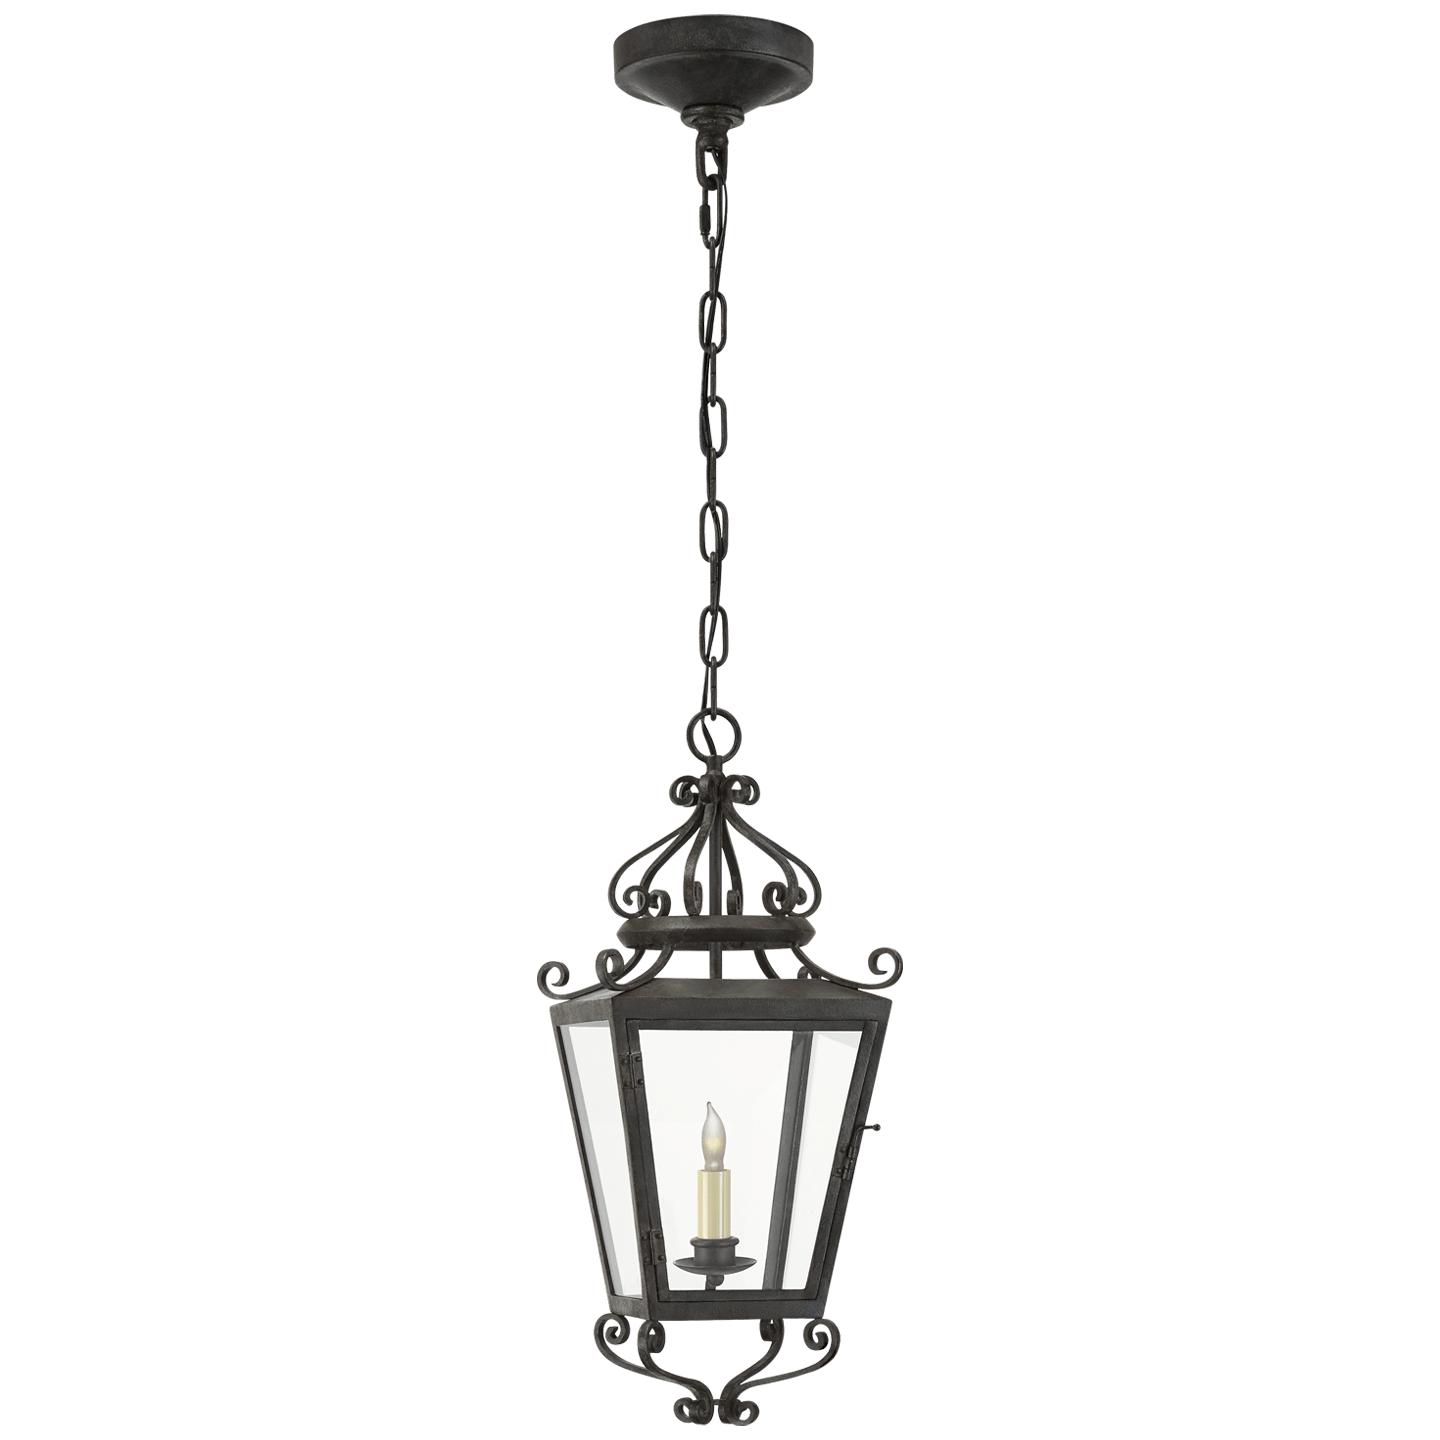 Купить Подвесной светильник Lafayette Small Hanging Lantern в интернет-магазине roooms.ru